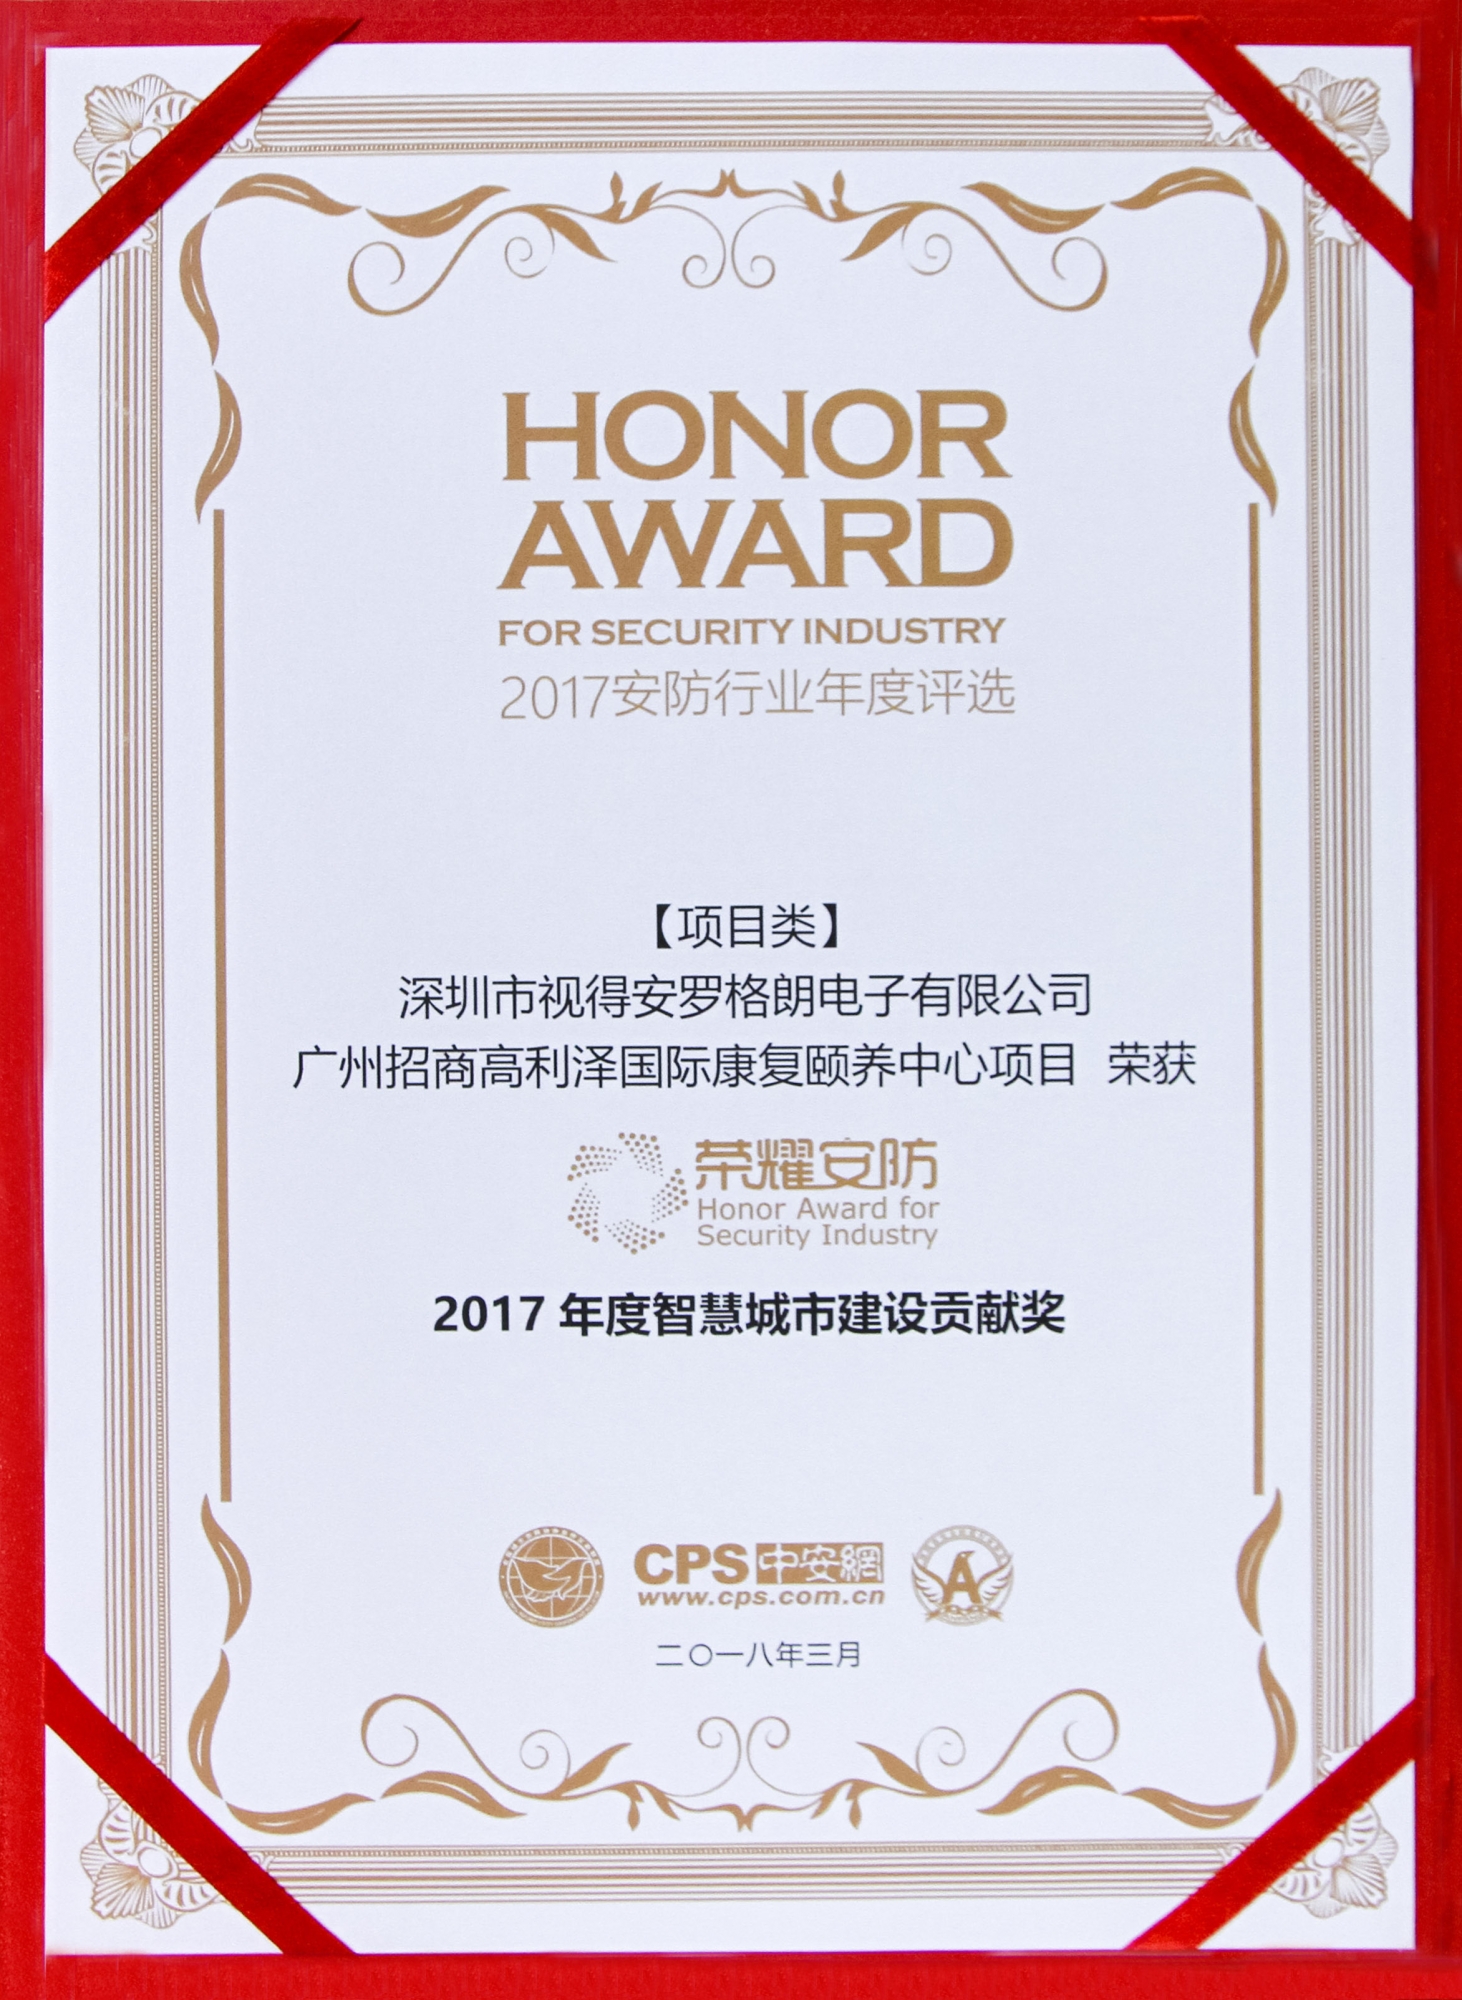 荣耀安防颁奖典礼，罗格朗斩获“2017年度智慧城市建设贡献奖”